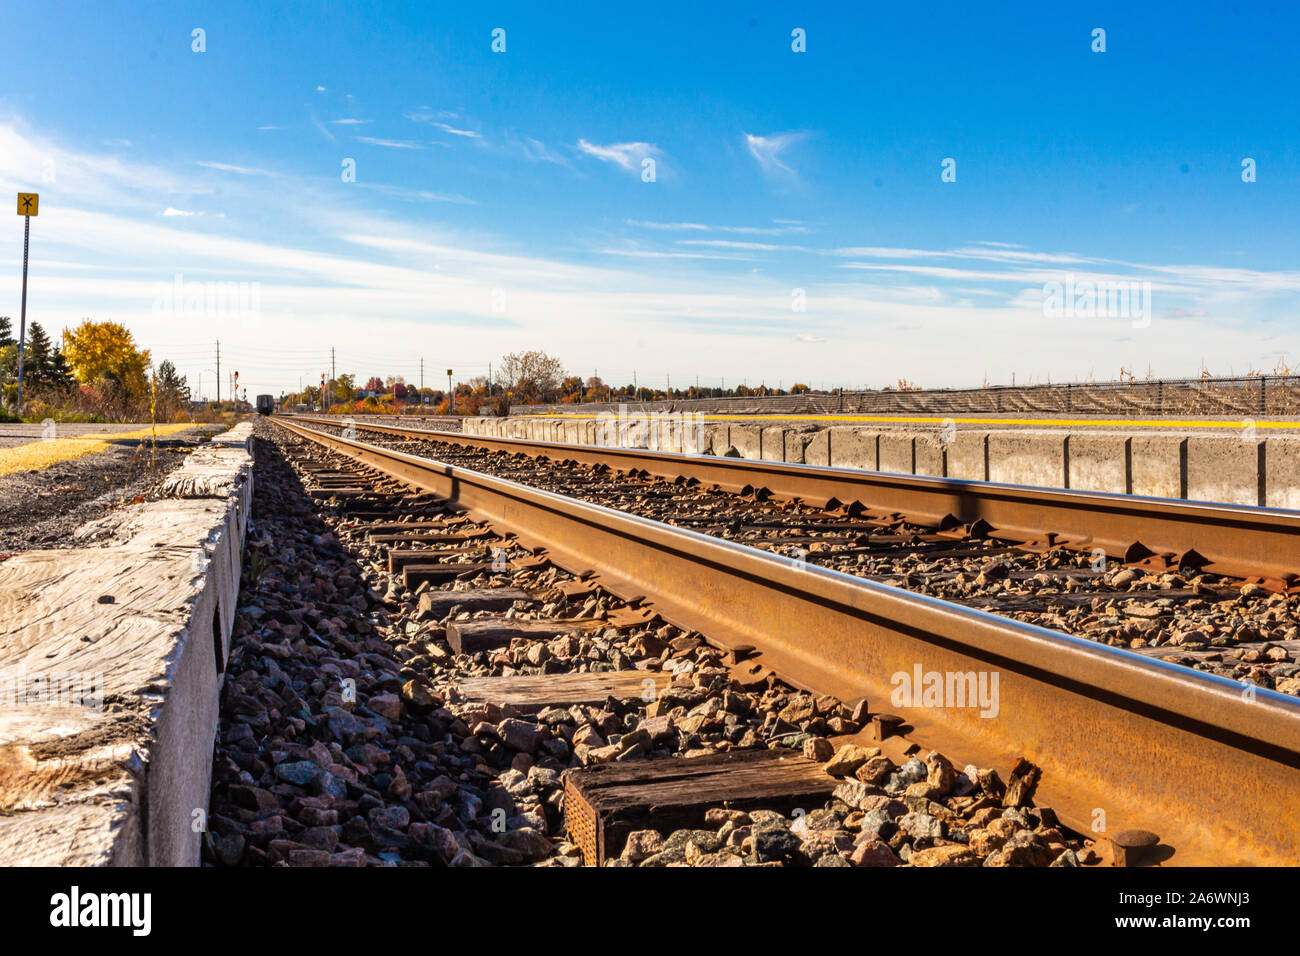 Su un perlopiù limpida giornata, fine auto passeggeri del treno può essere visto nel lontano orizzonte si allontana. I binari ferroviari vengono visualizzati a basso avanti e indietro Foto Stock